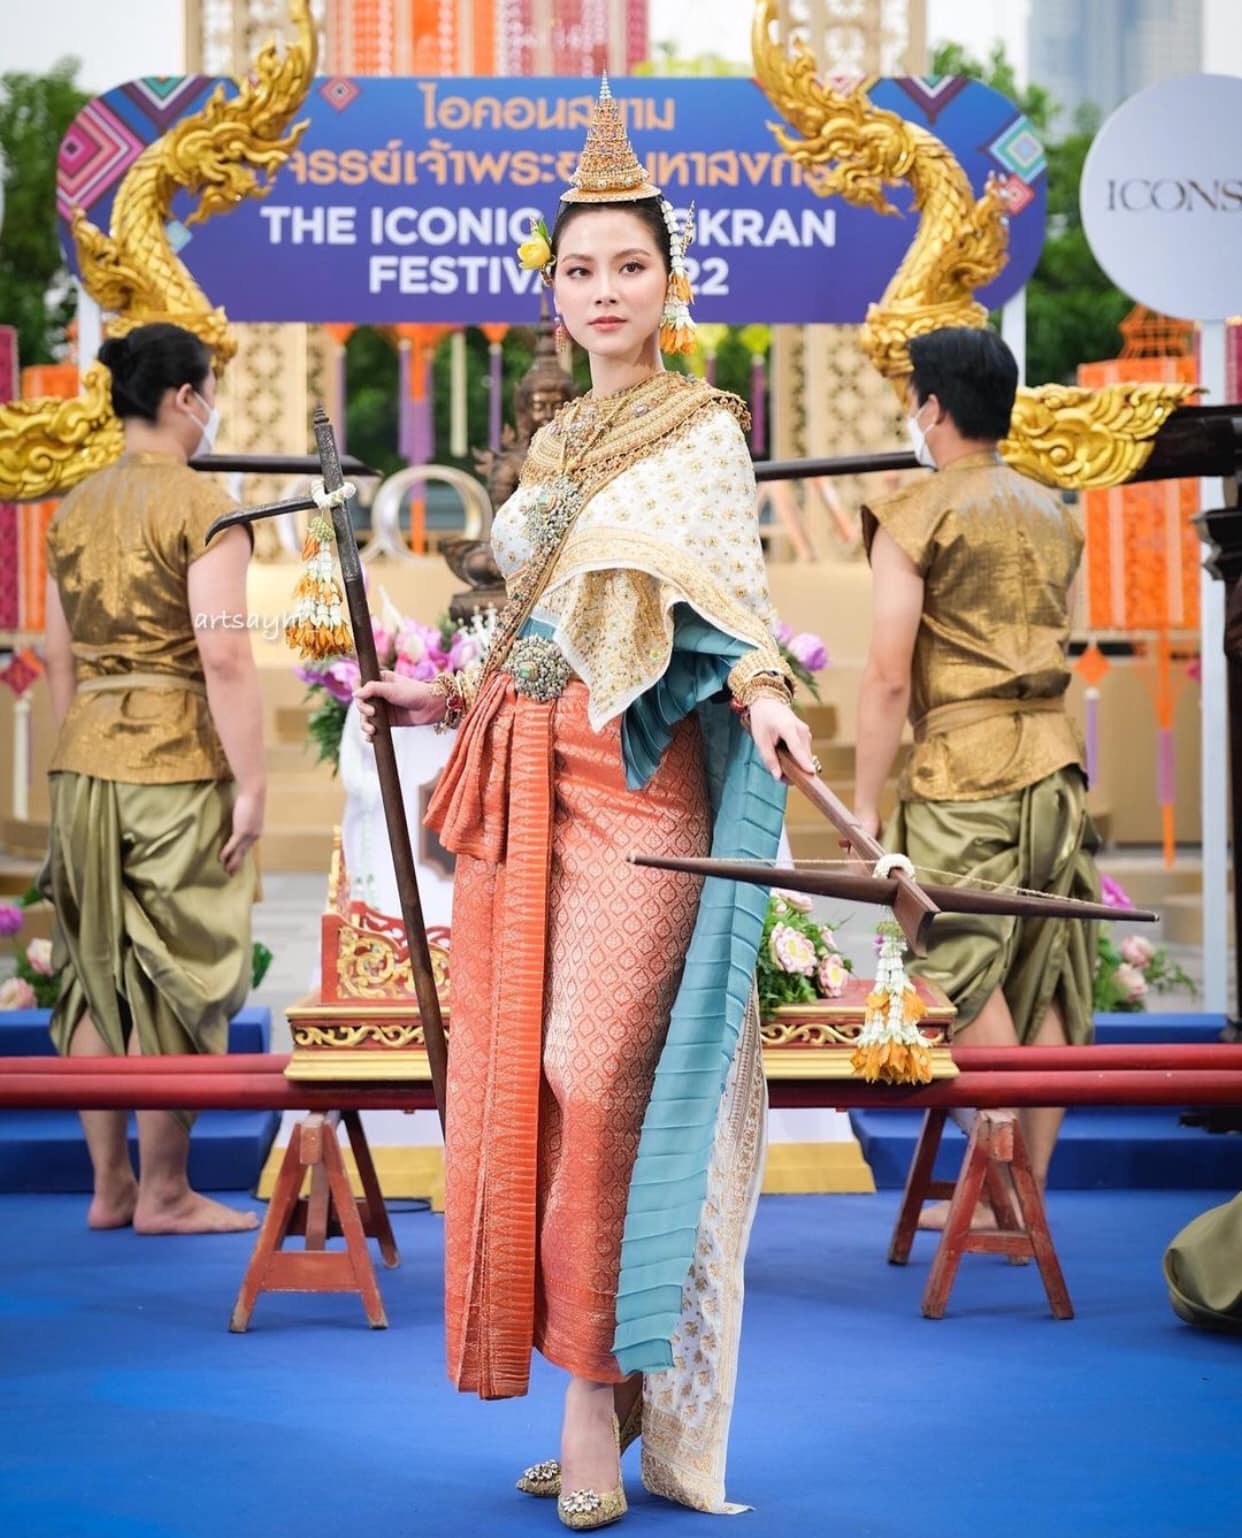 Nữ thần Songkran lộ diện: Baifern (Chiếc Lá Bay) đẹp kinh diễm trong trang phục 1,3 tỷ, visual thăng hạng ngoạn mục giữa Icon Siam - Ảnh 3.